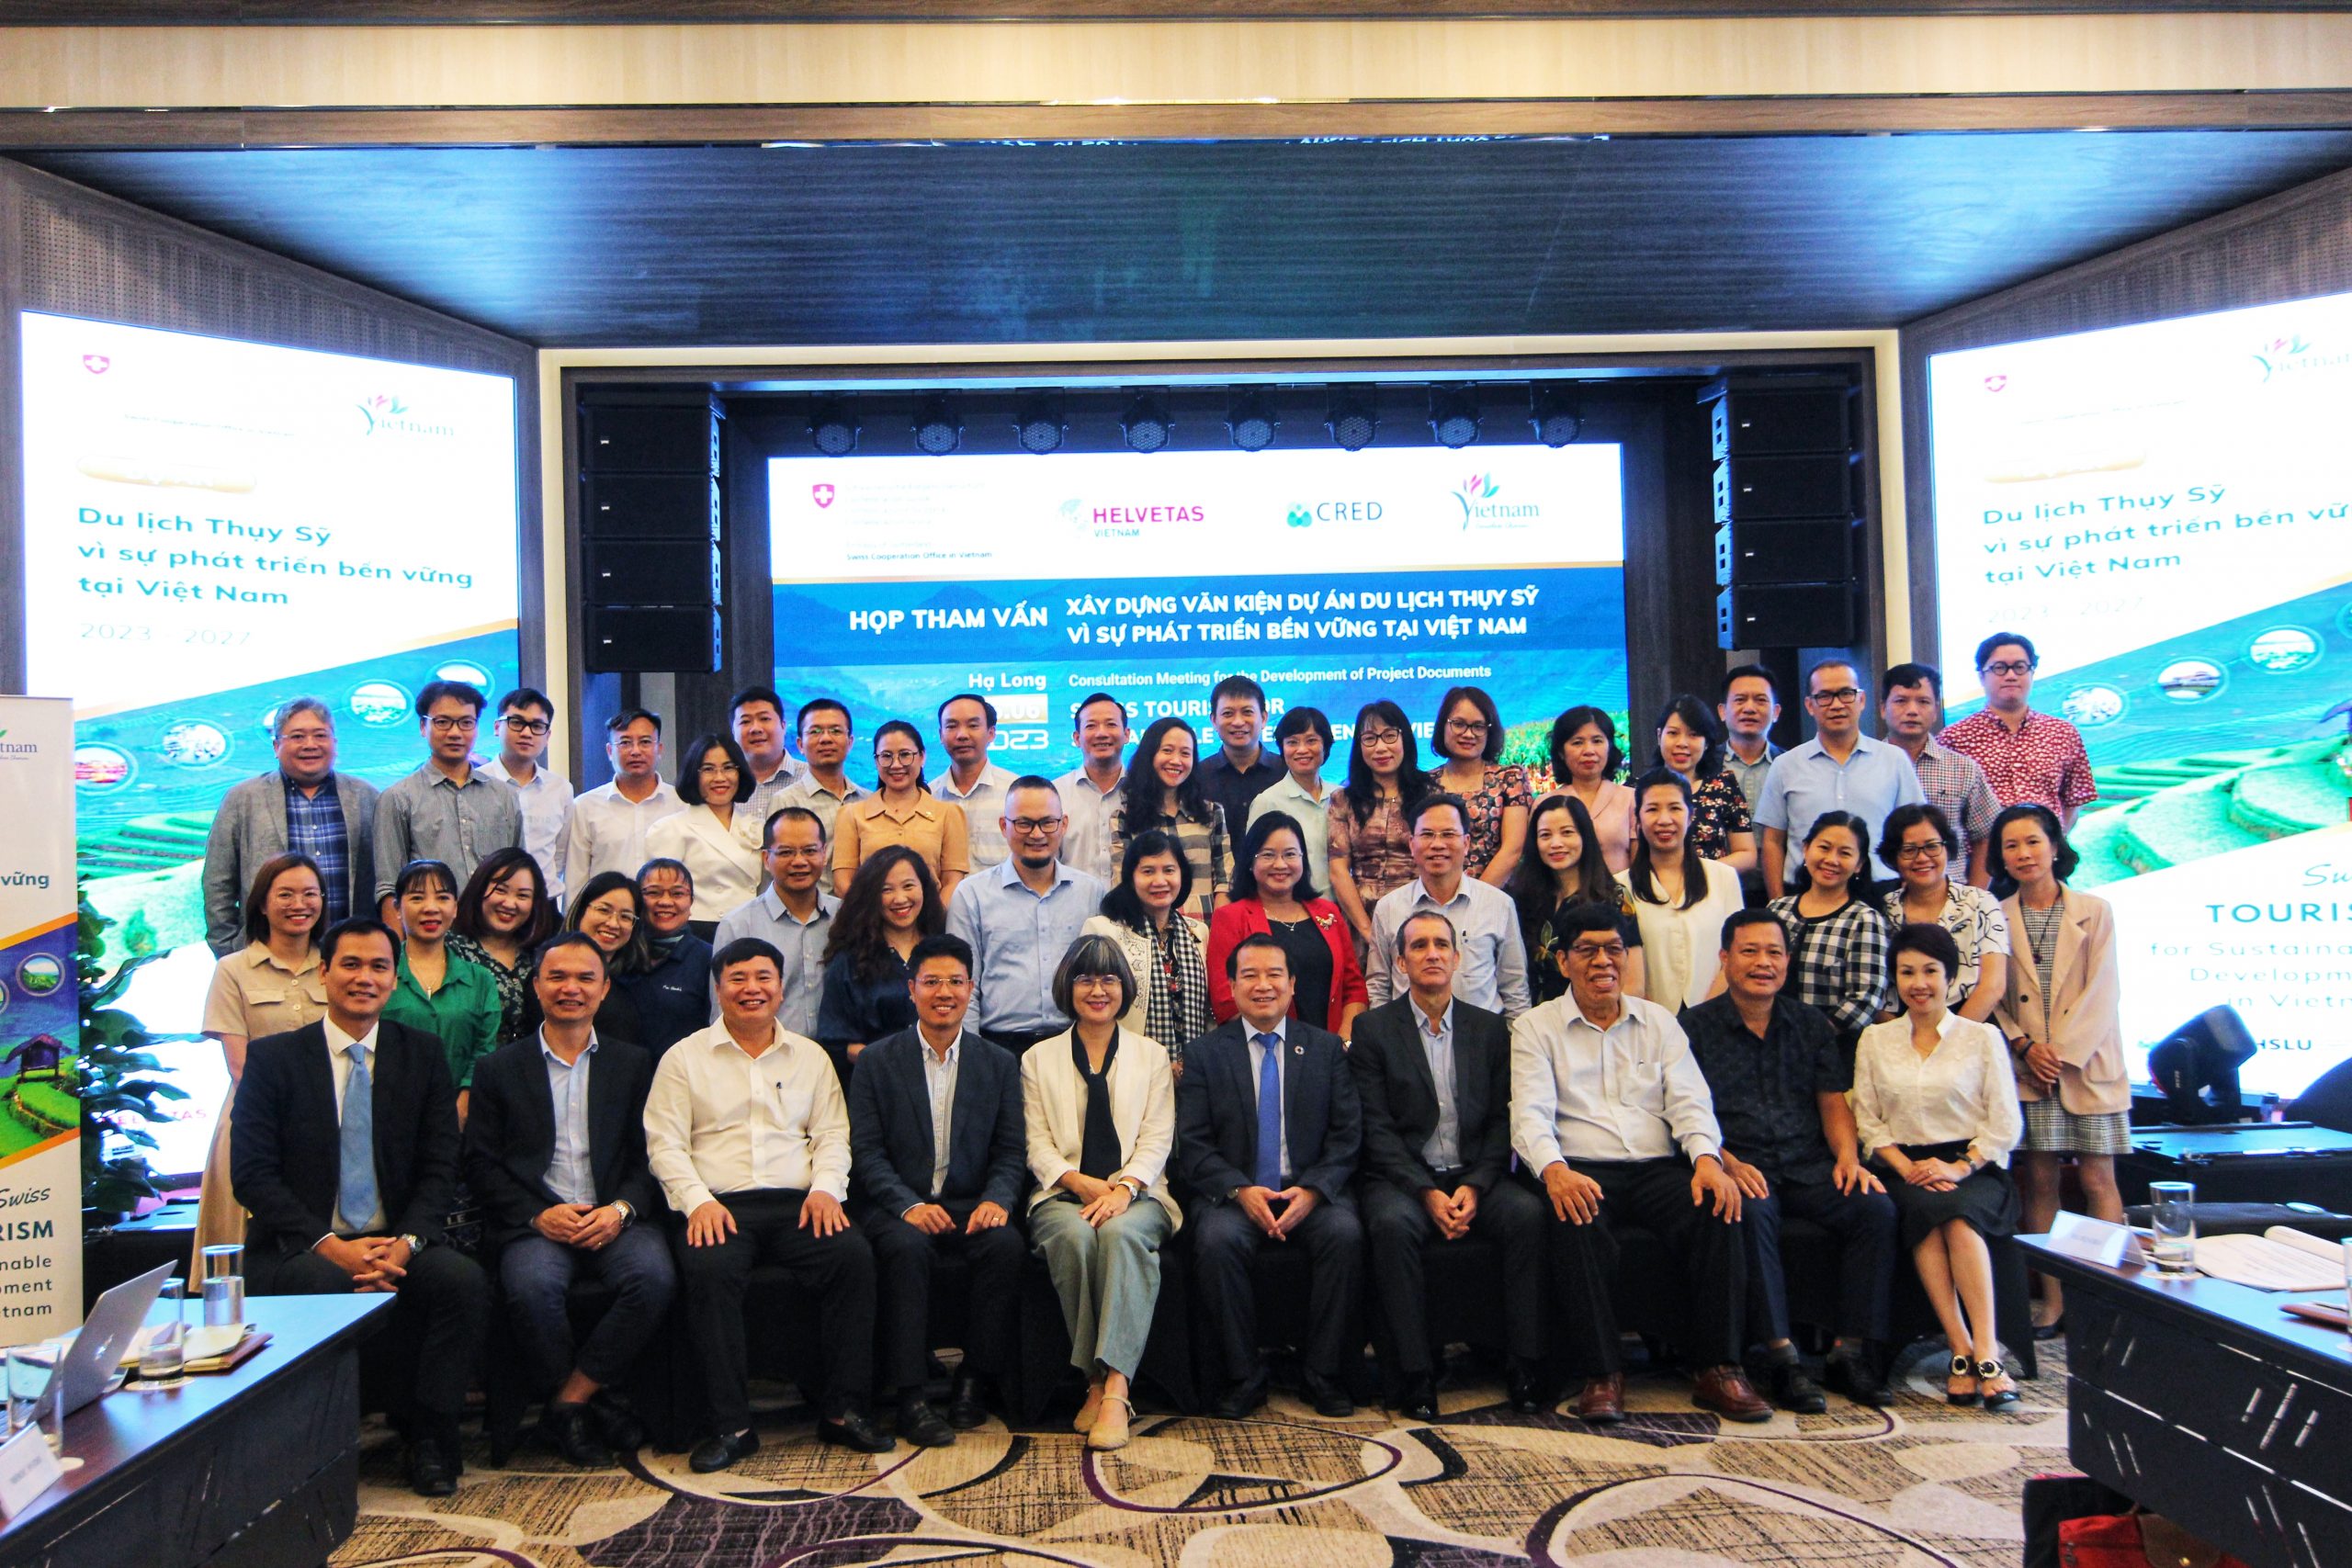 Cuộc họp tham vấn xây dựng văn kiện dự án du lịch Thuỵ Sĩ vì sự phát triển bền vững tại Việt Nam